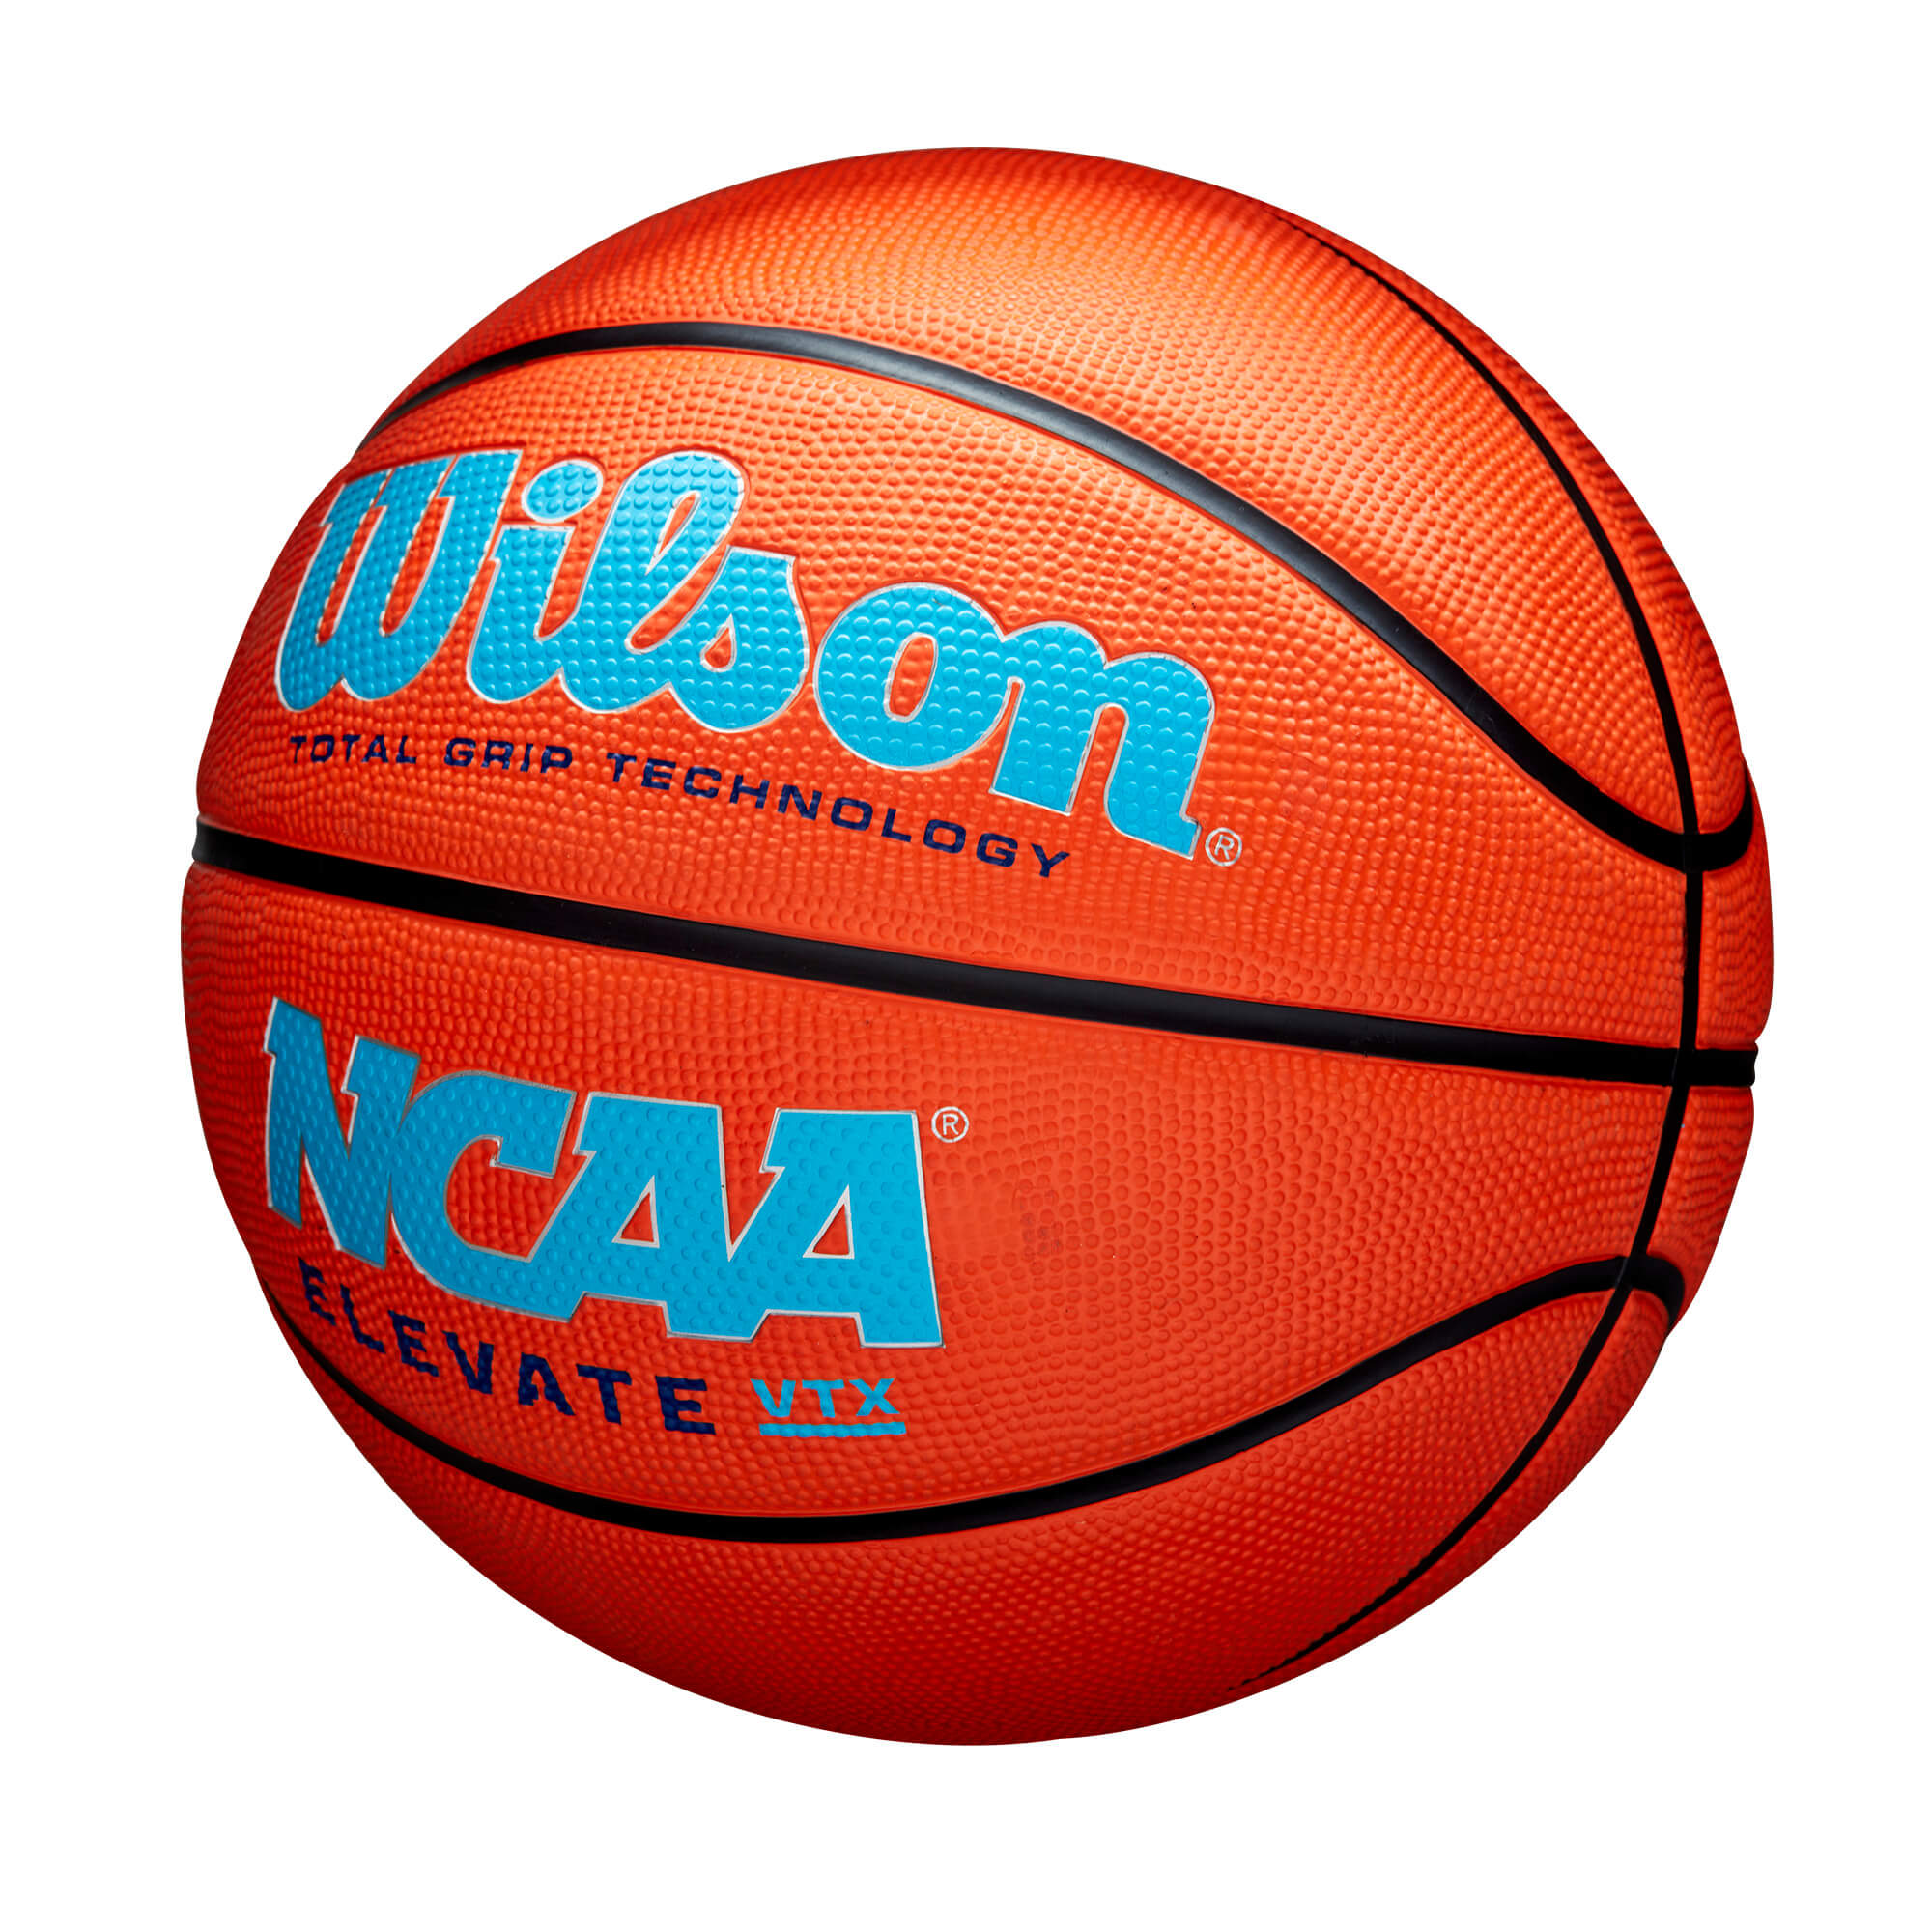 Ballons de basket NCAA Elevate VTX